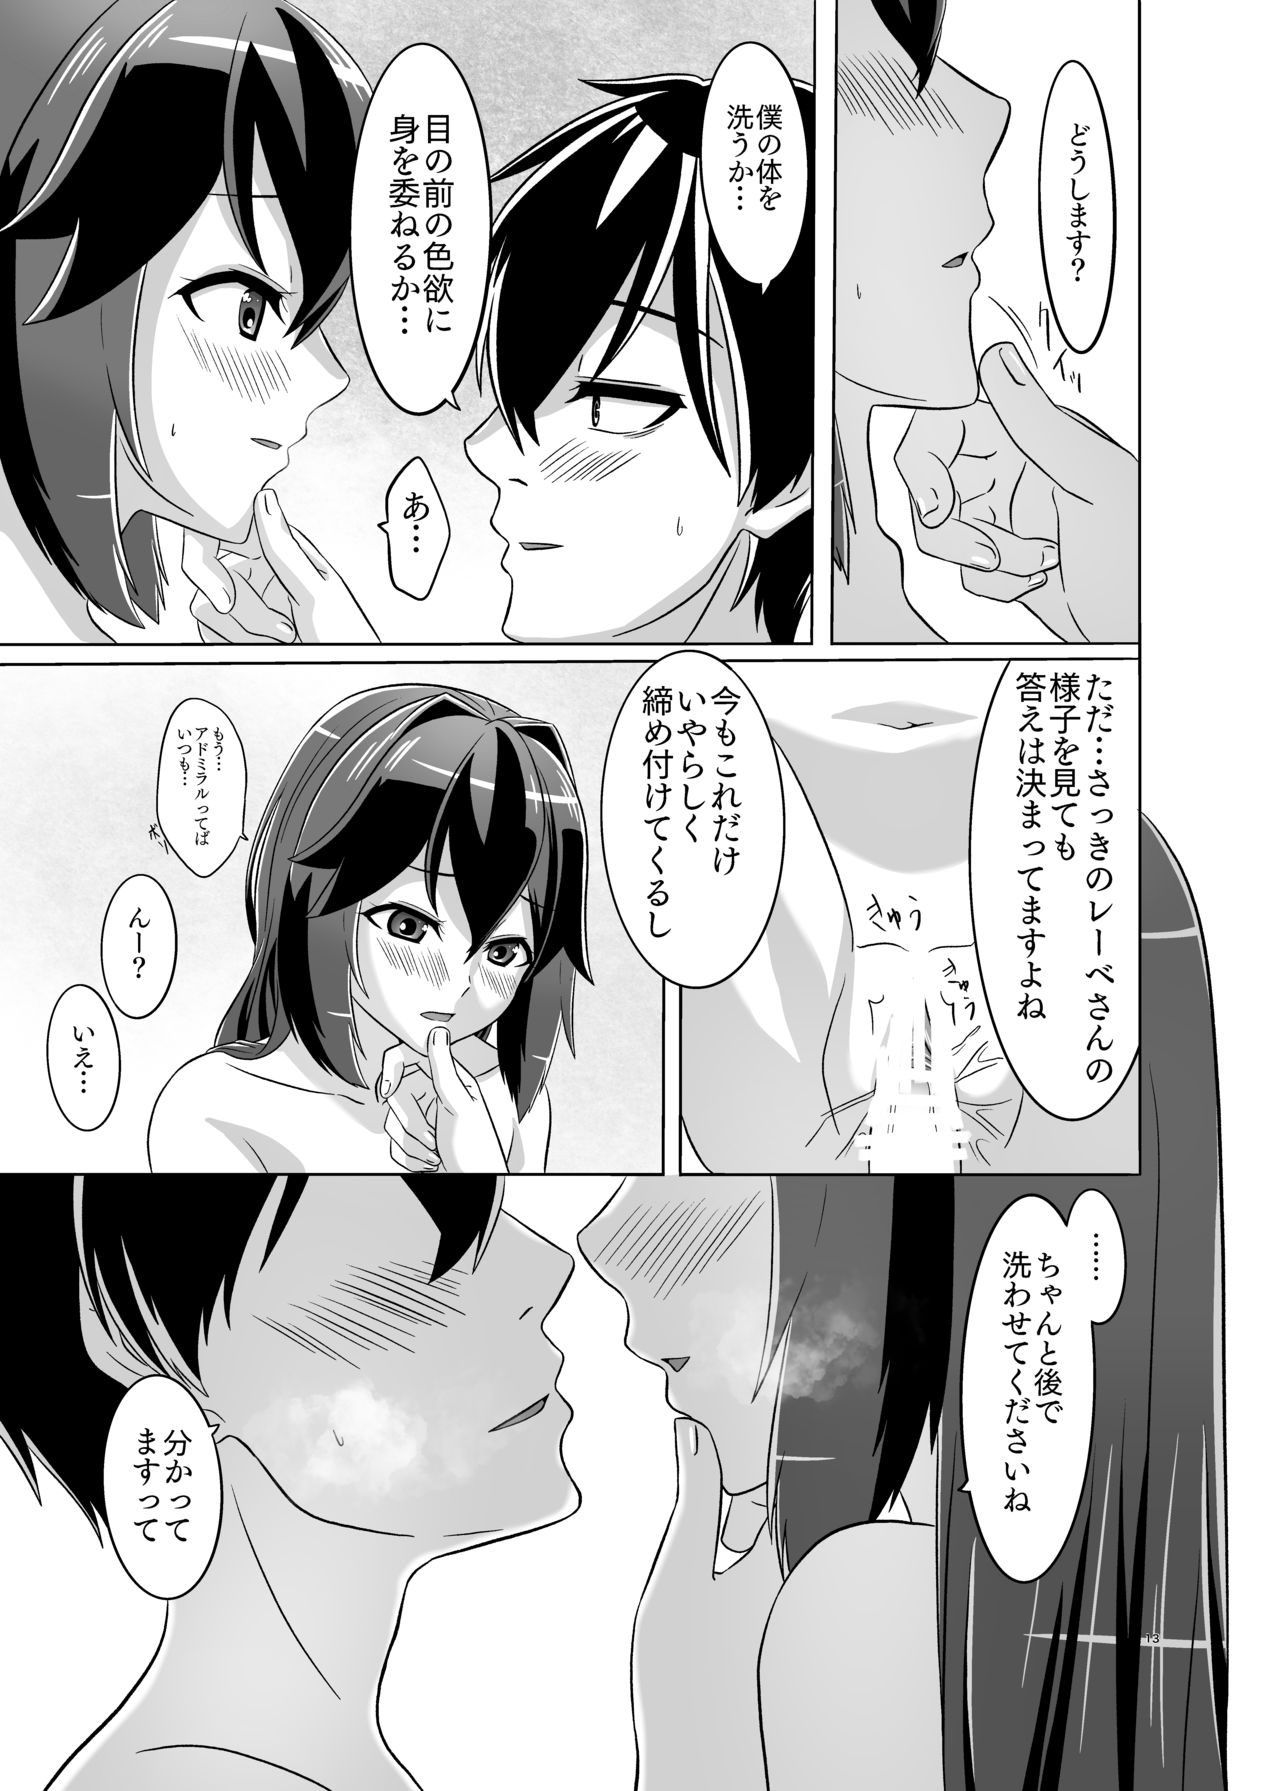 [Torutī-ya] Itsumo no yoru futari no yotogi⑵ (Warship Girls R) page 14 full